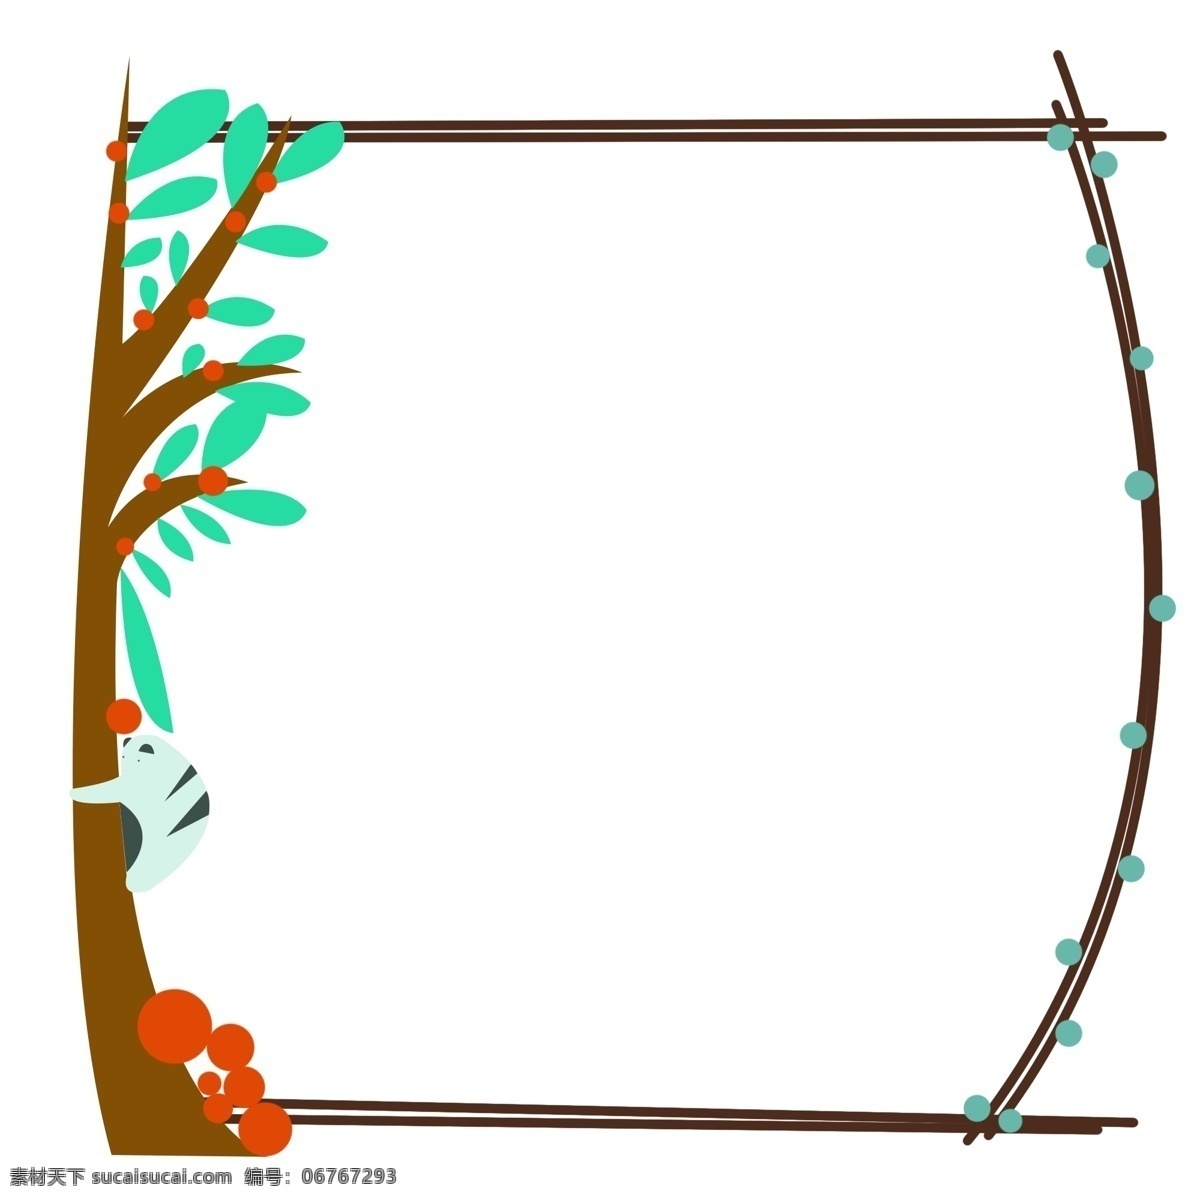 可爱 植物 边框 插画 创意边框 可爱边框 植物边框 唯美边框 绿色植物边框 红色果实 叶子